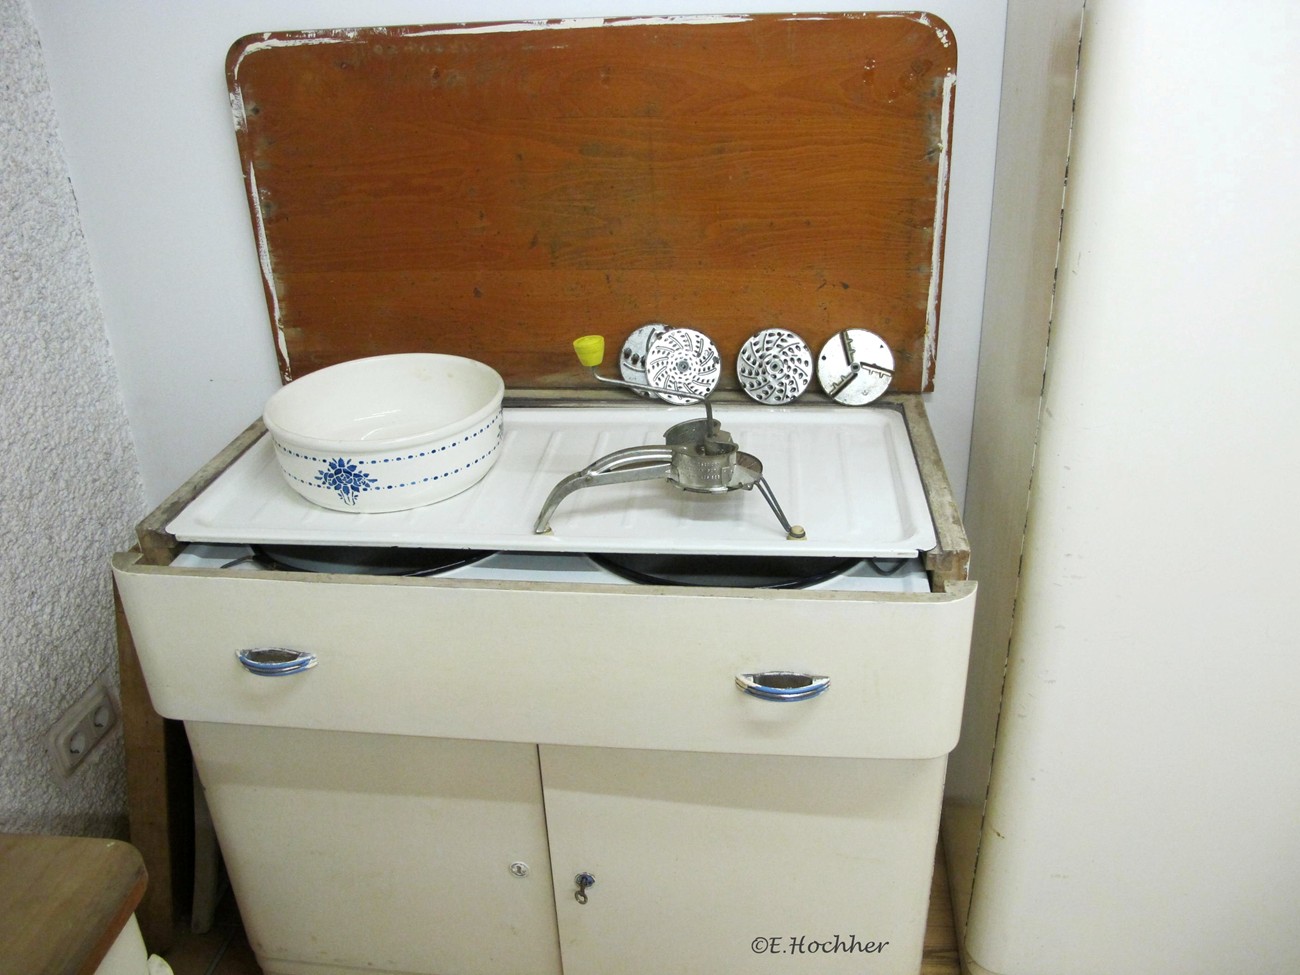 Kücheneinrichtung - Abwasch